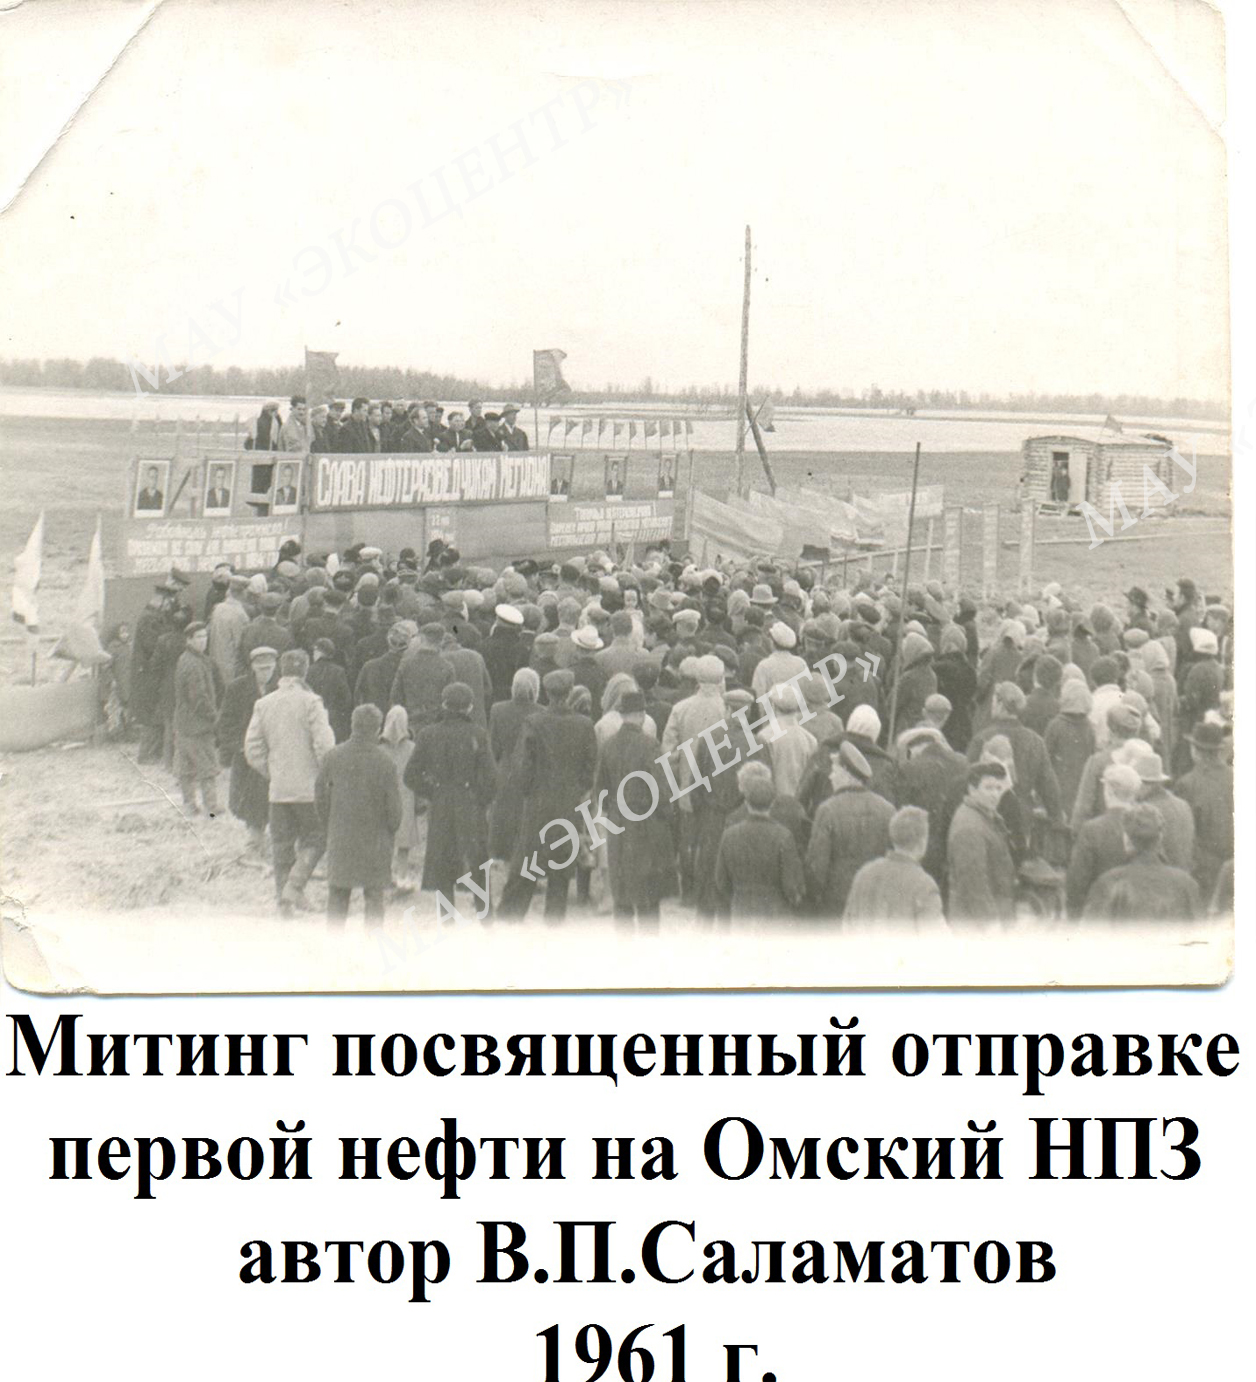 Митинг посвященный отправке первой нефти на Омский НПЗ / автор В.П.Саламатов / 1961 г.